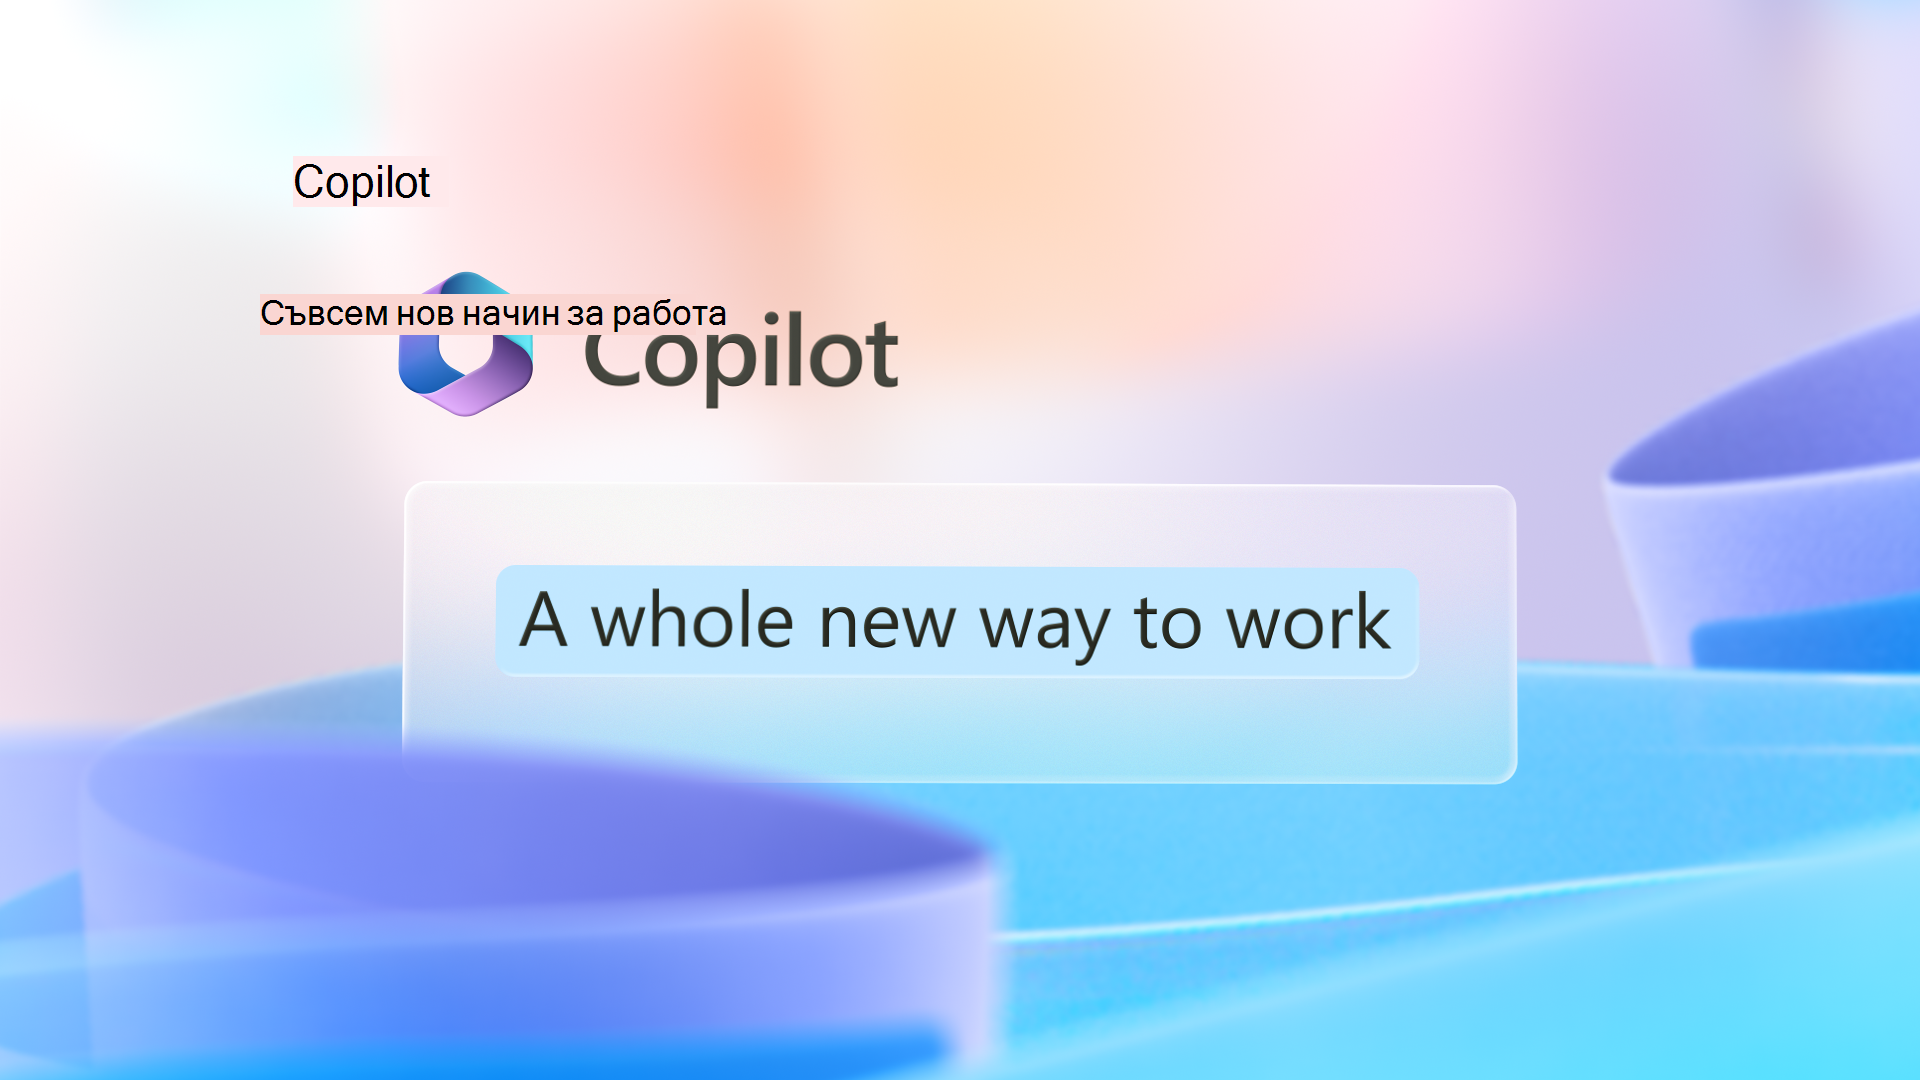 Графичното изображение има емблема на Copilot с думите Съвсем нов начин за работа.